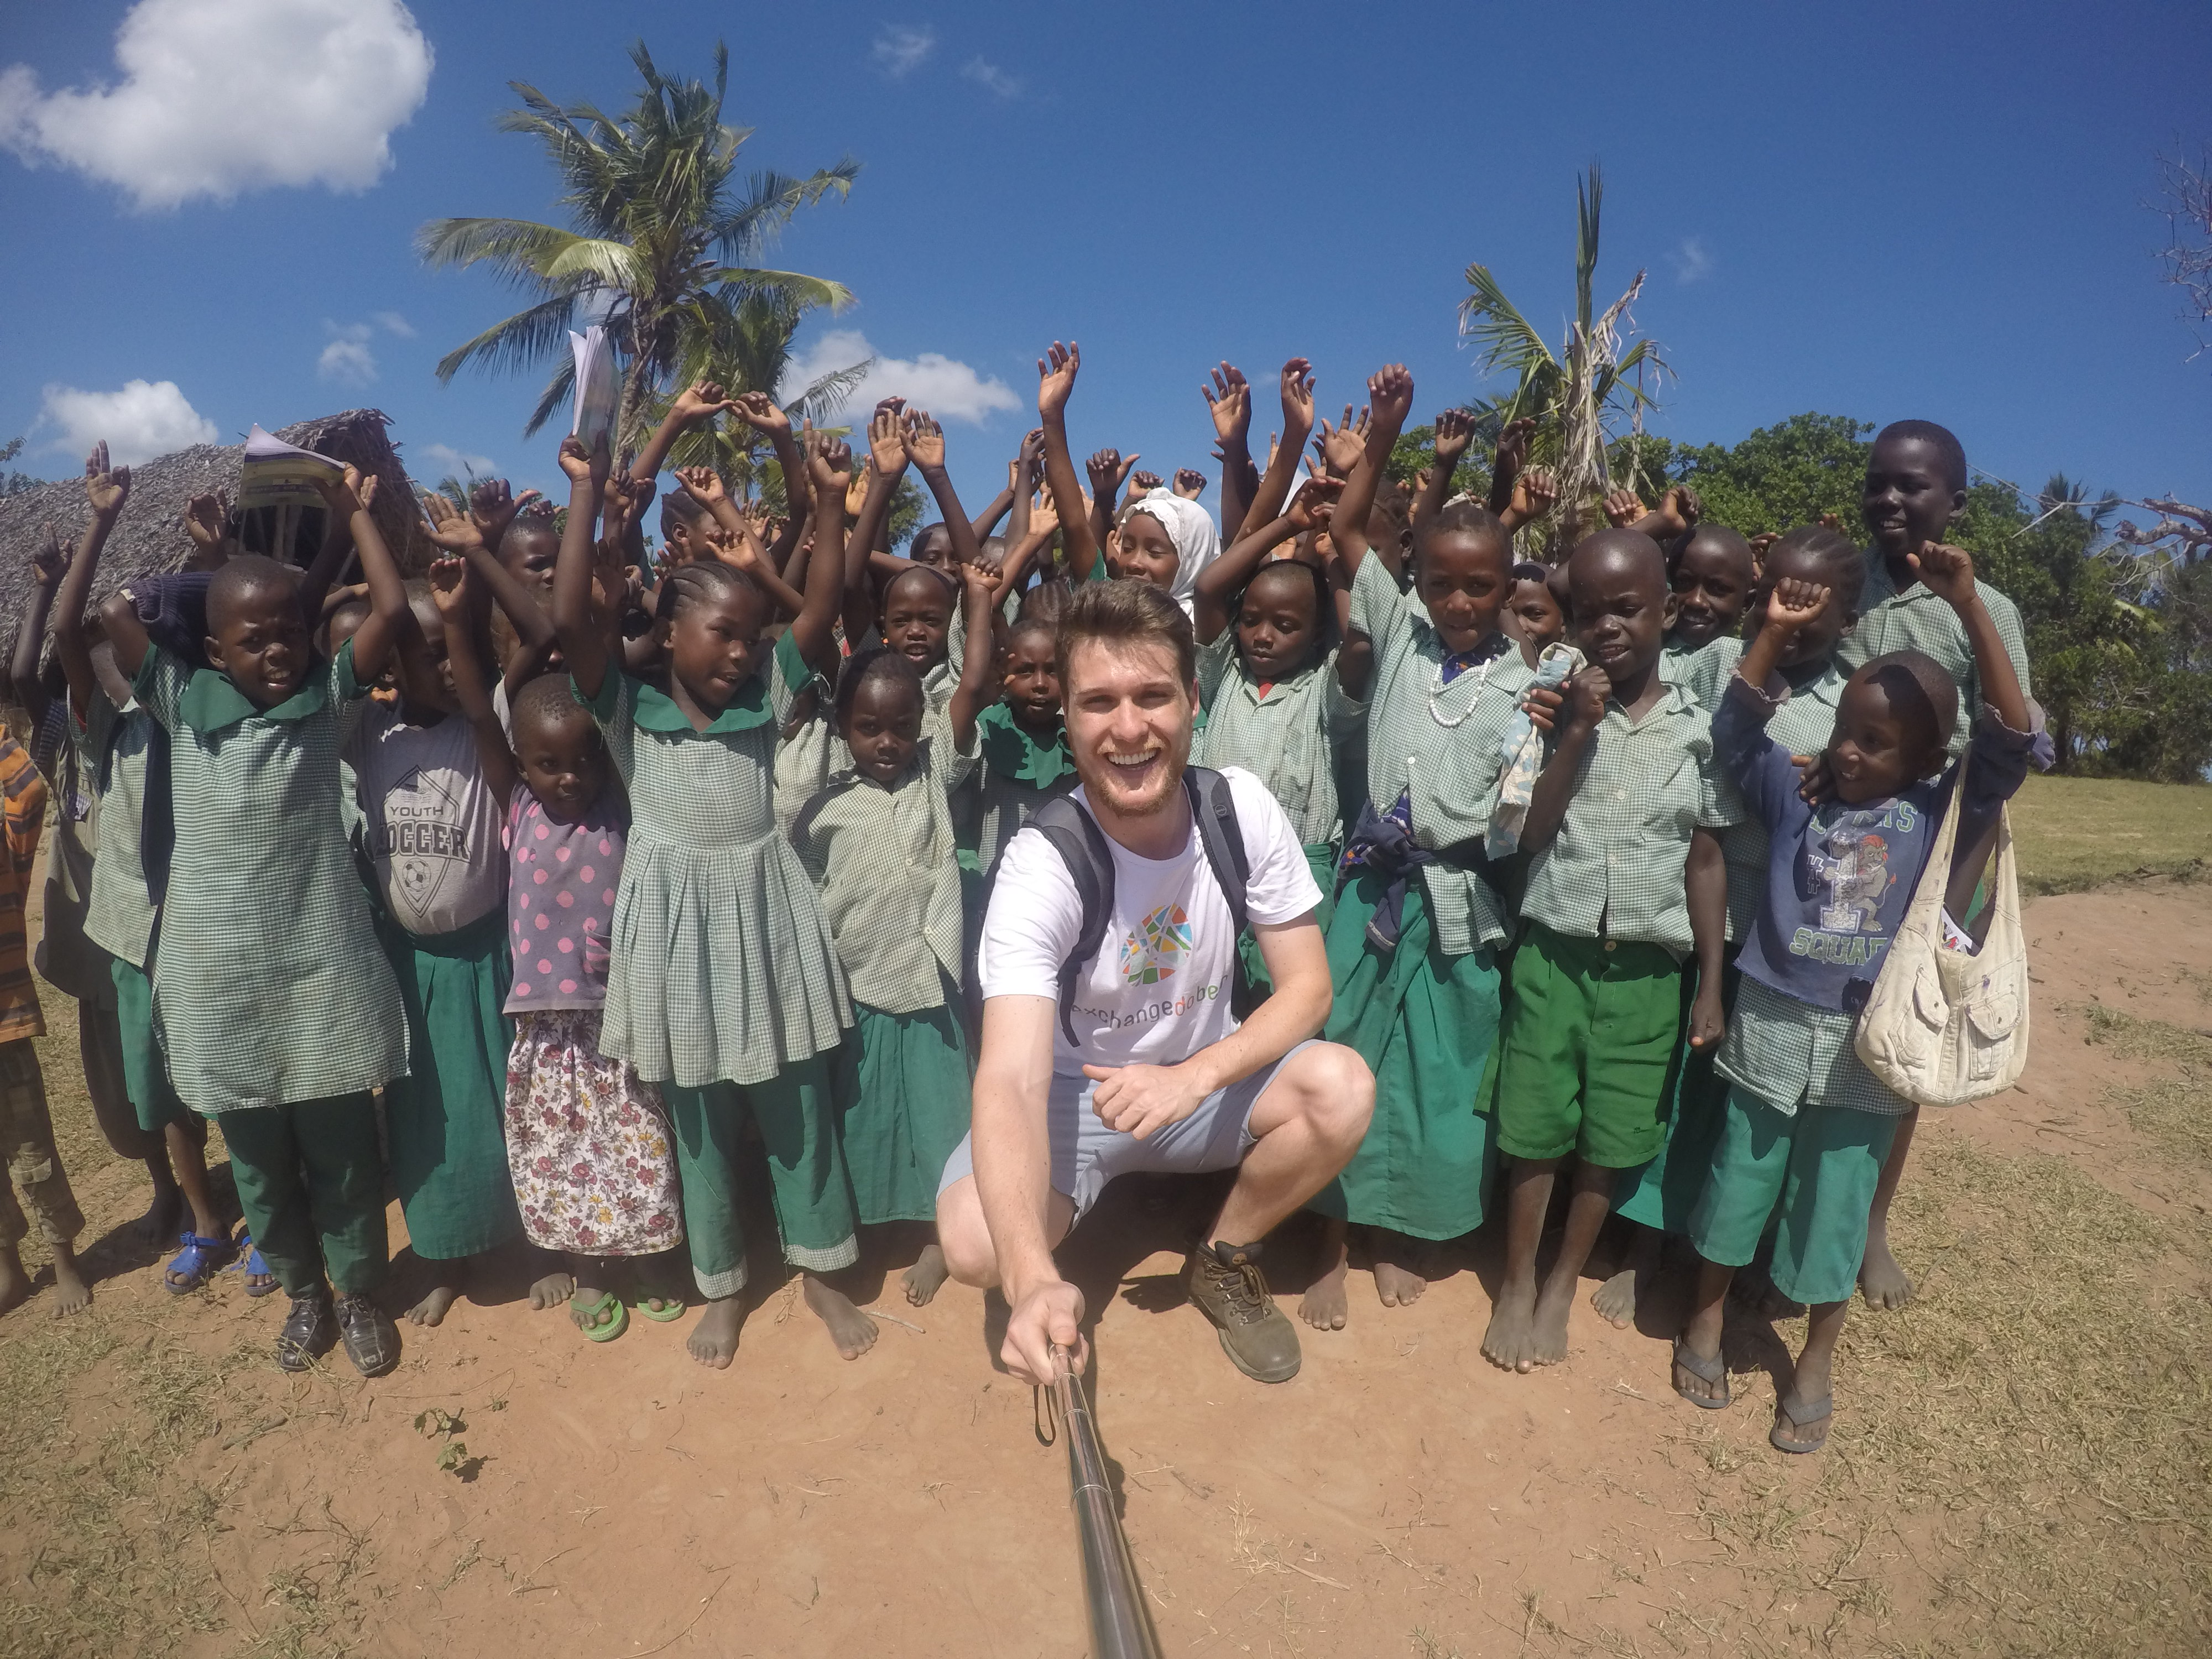 voluntariado no exterior selfie com grupo de crianças